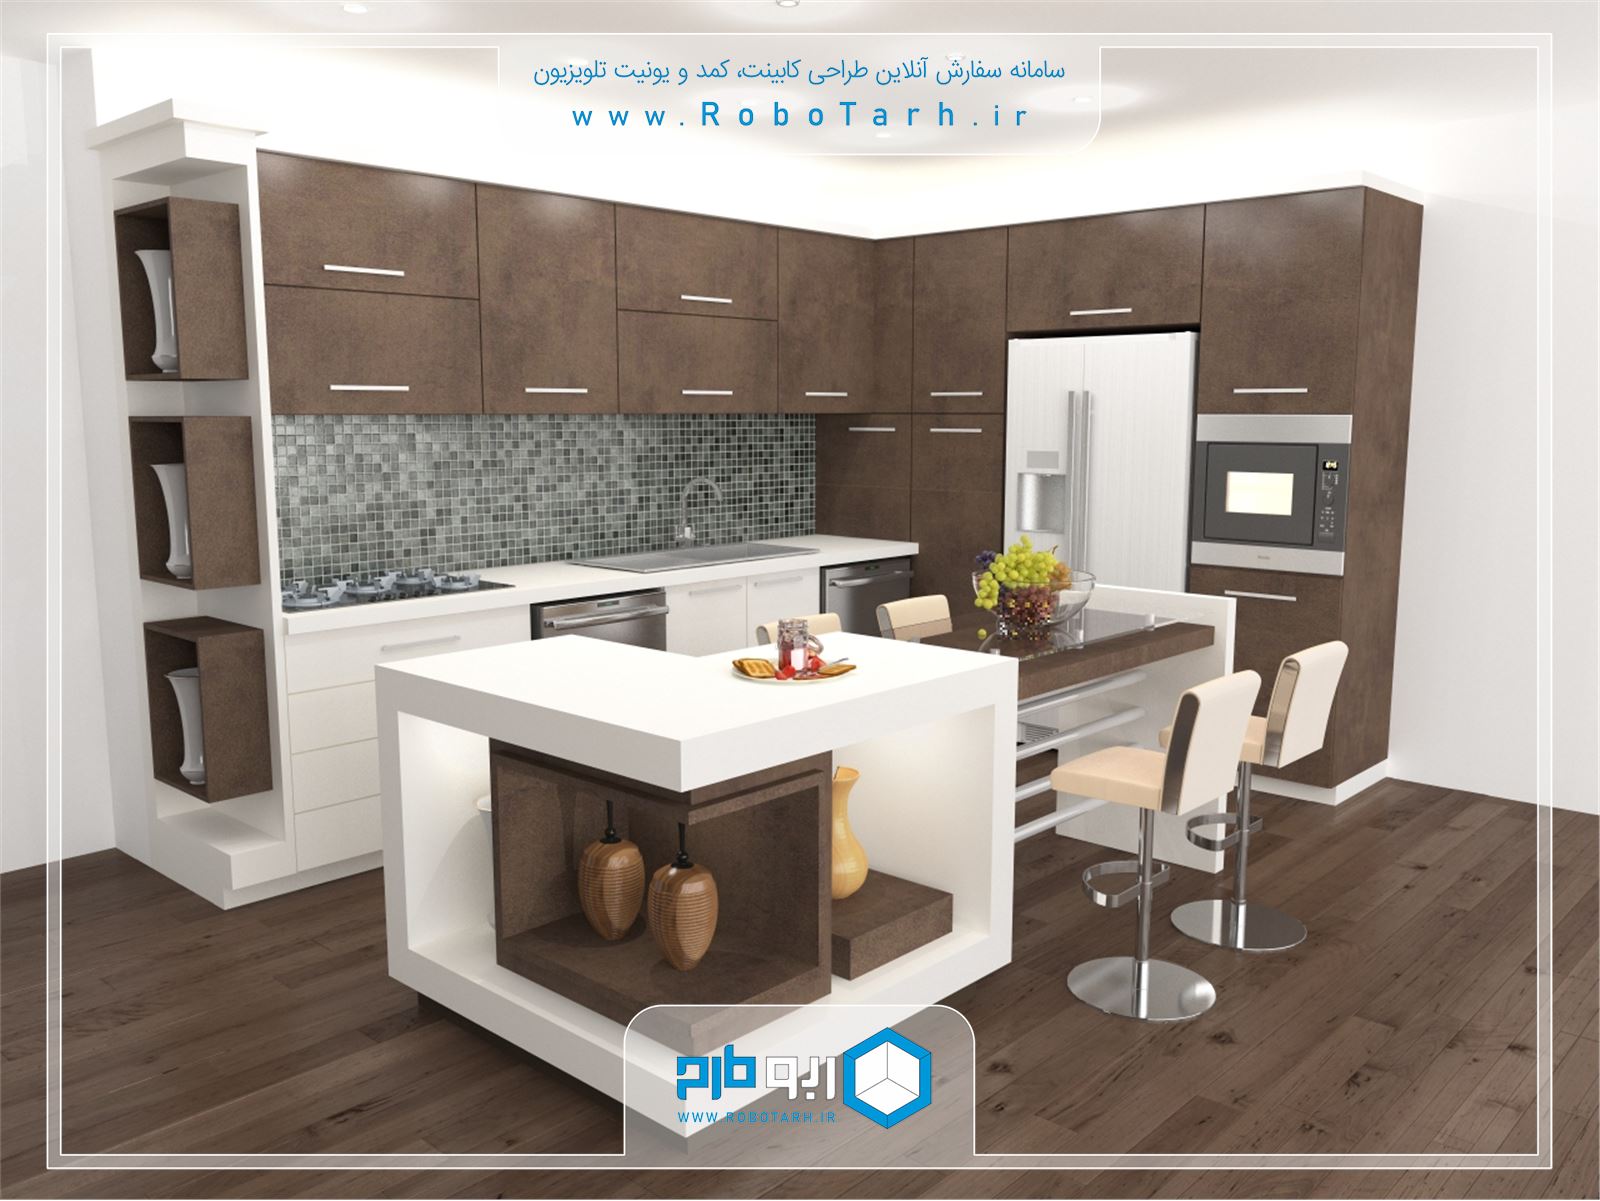 طراحی کابینت آشپزخانه مدرن قهوه ای و سفید با چیدمان ال شکل - ربوطرح